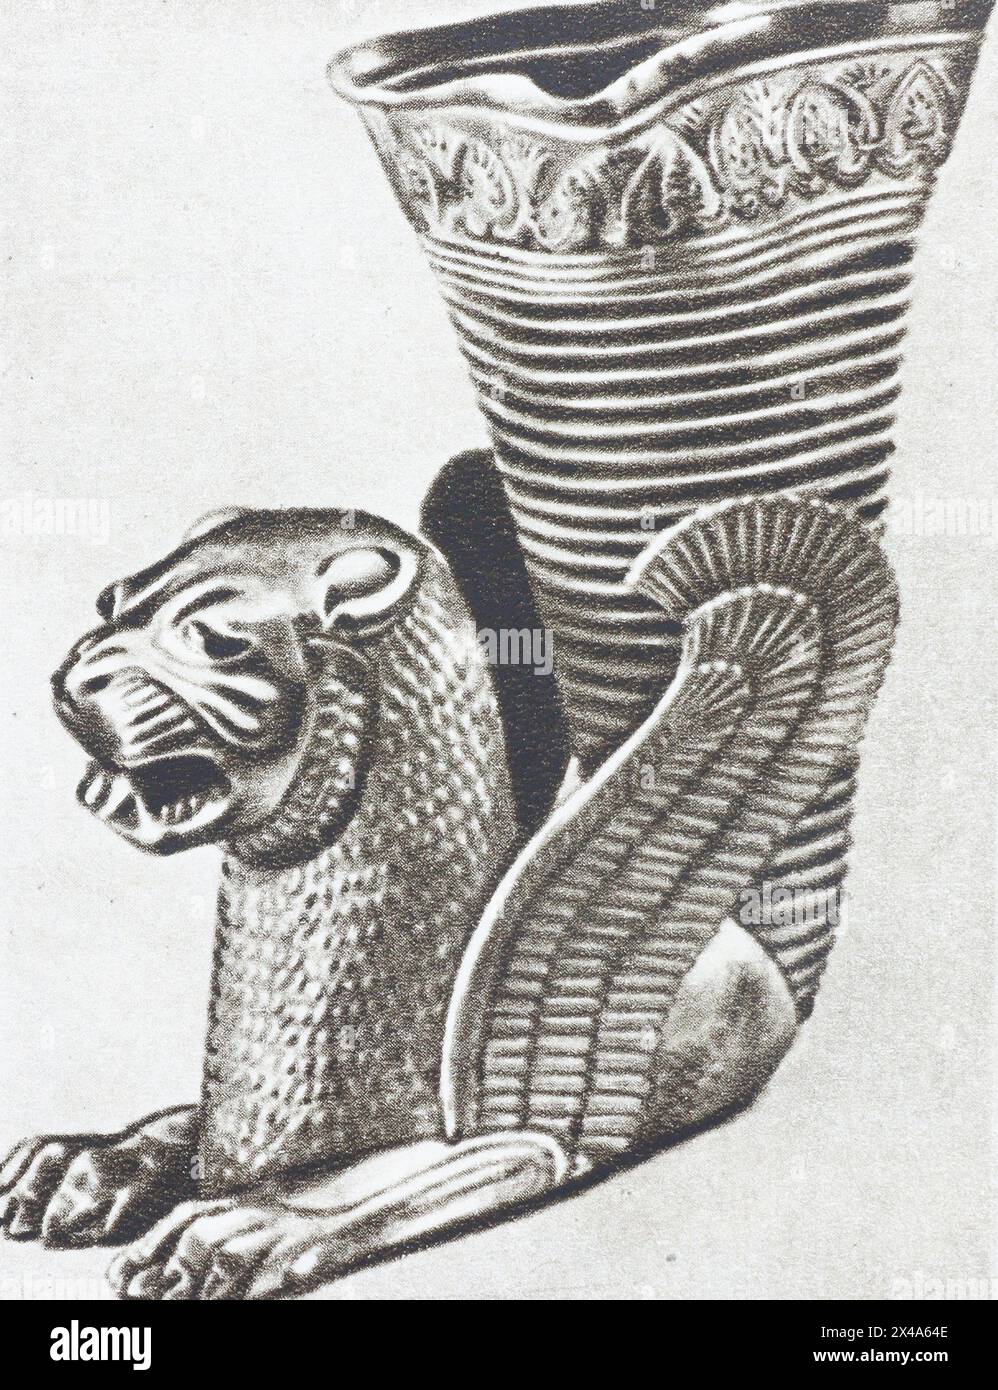 Rhyton doré (coupe de vin) en forme de lion ailé. Un exemple d'art appliqué de l'ère achéménide. Photos de la première moitié du XXe siècle. Banque D'Images